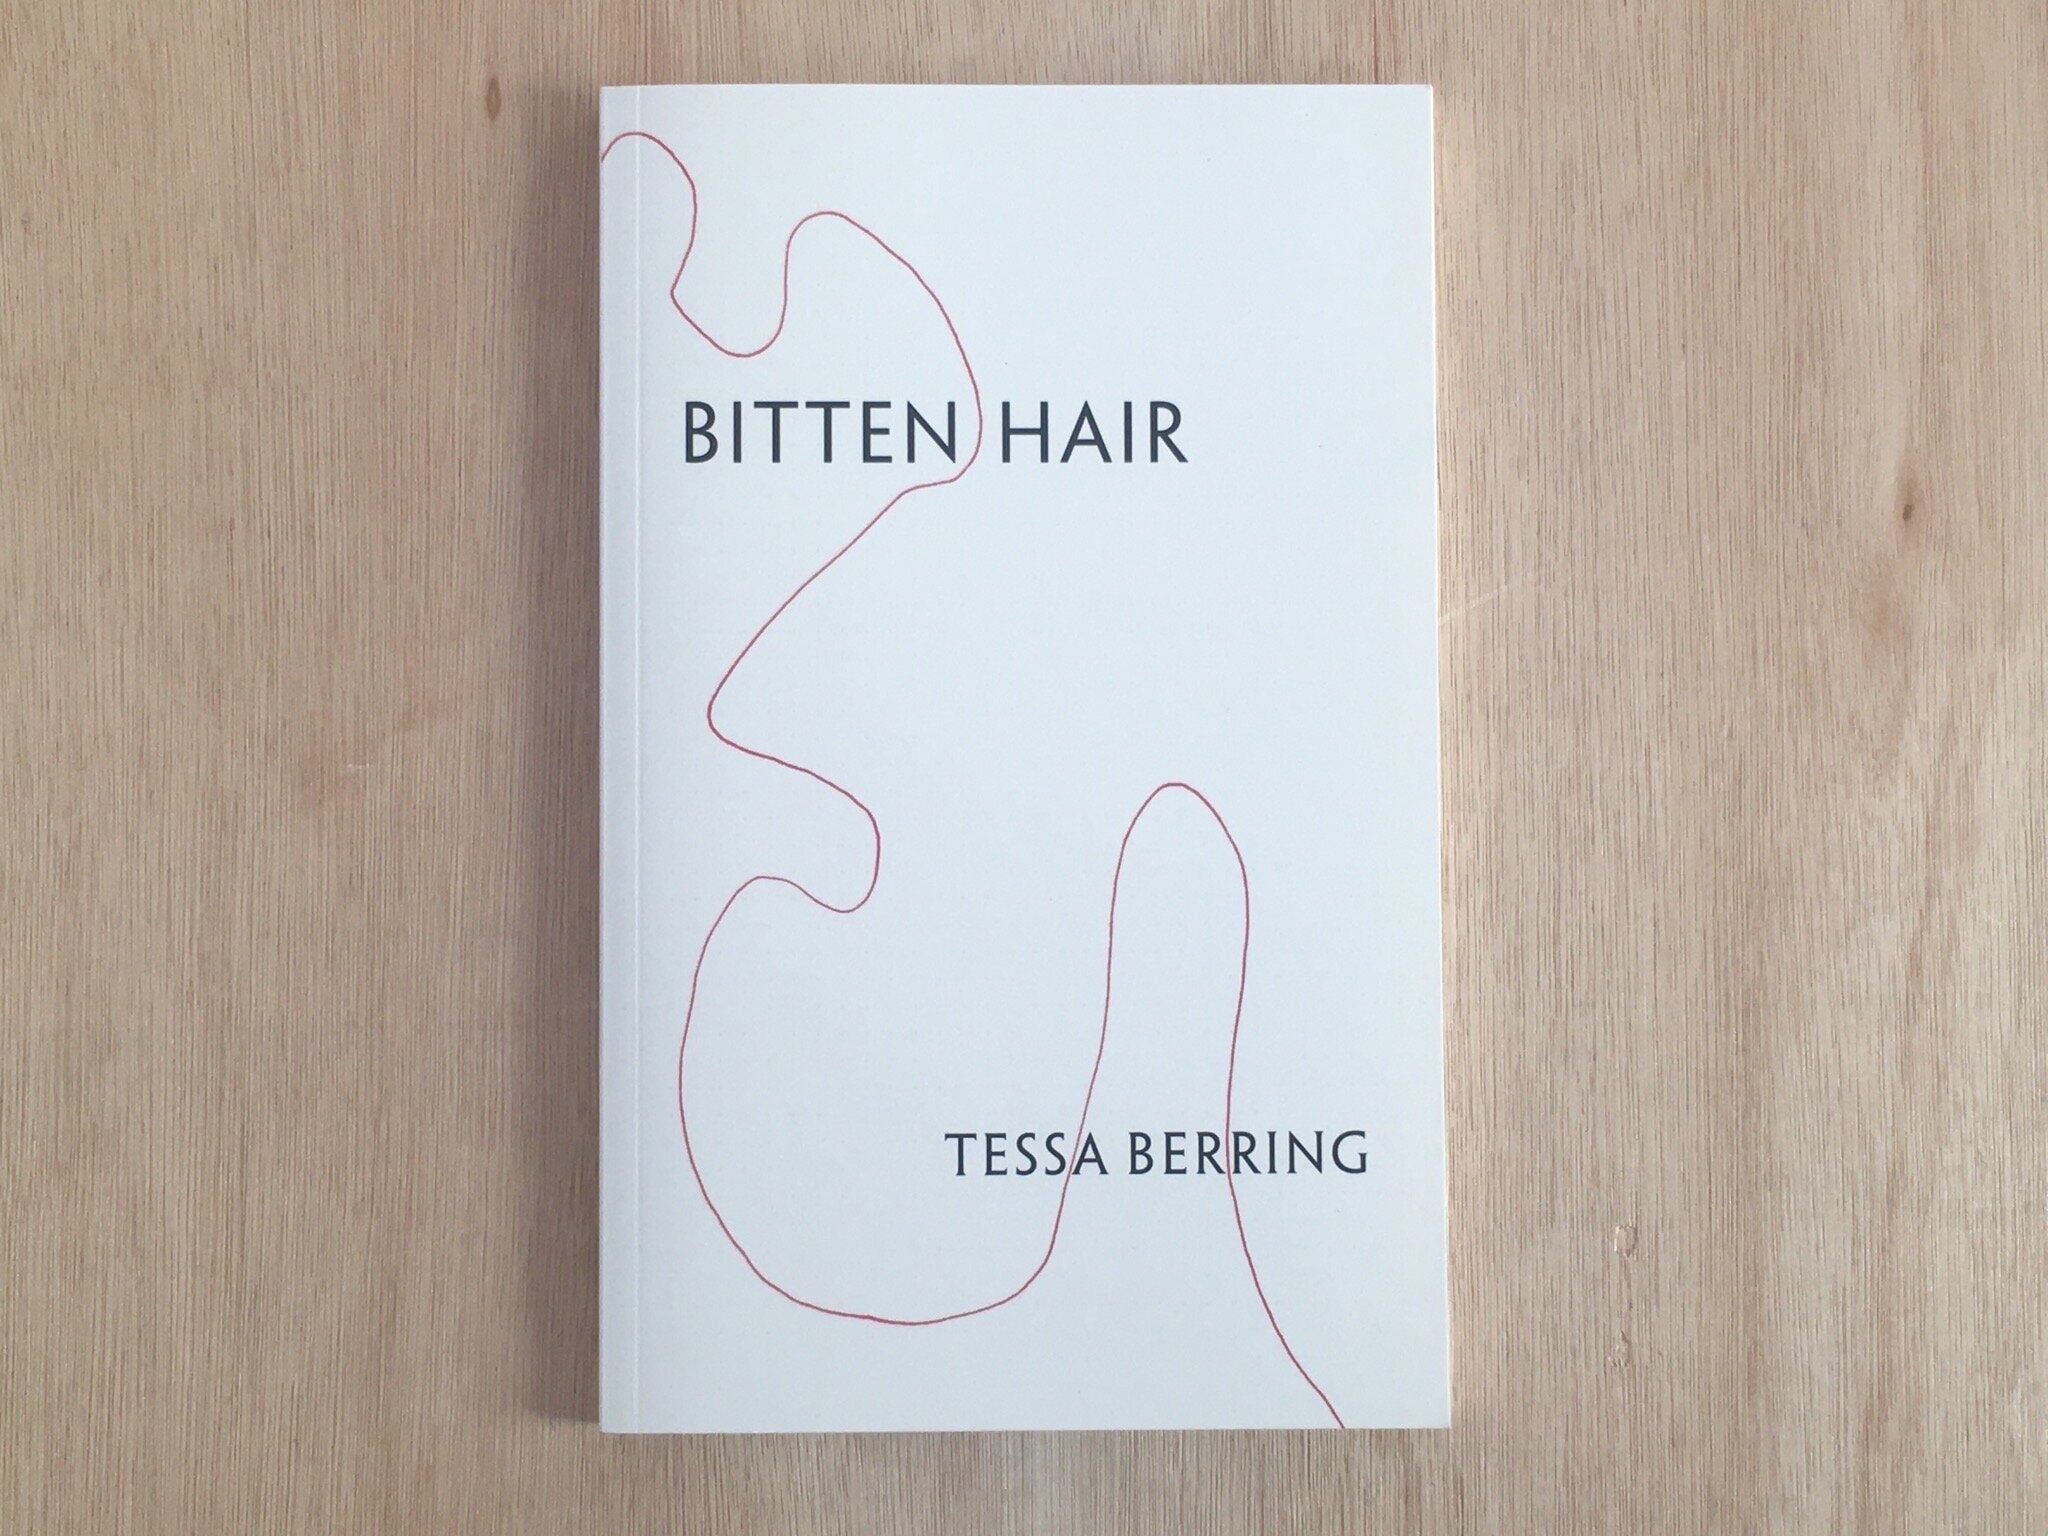 BITTEN HAIR by Tessa Berring